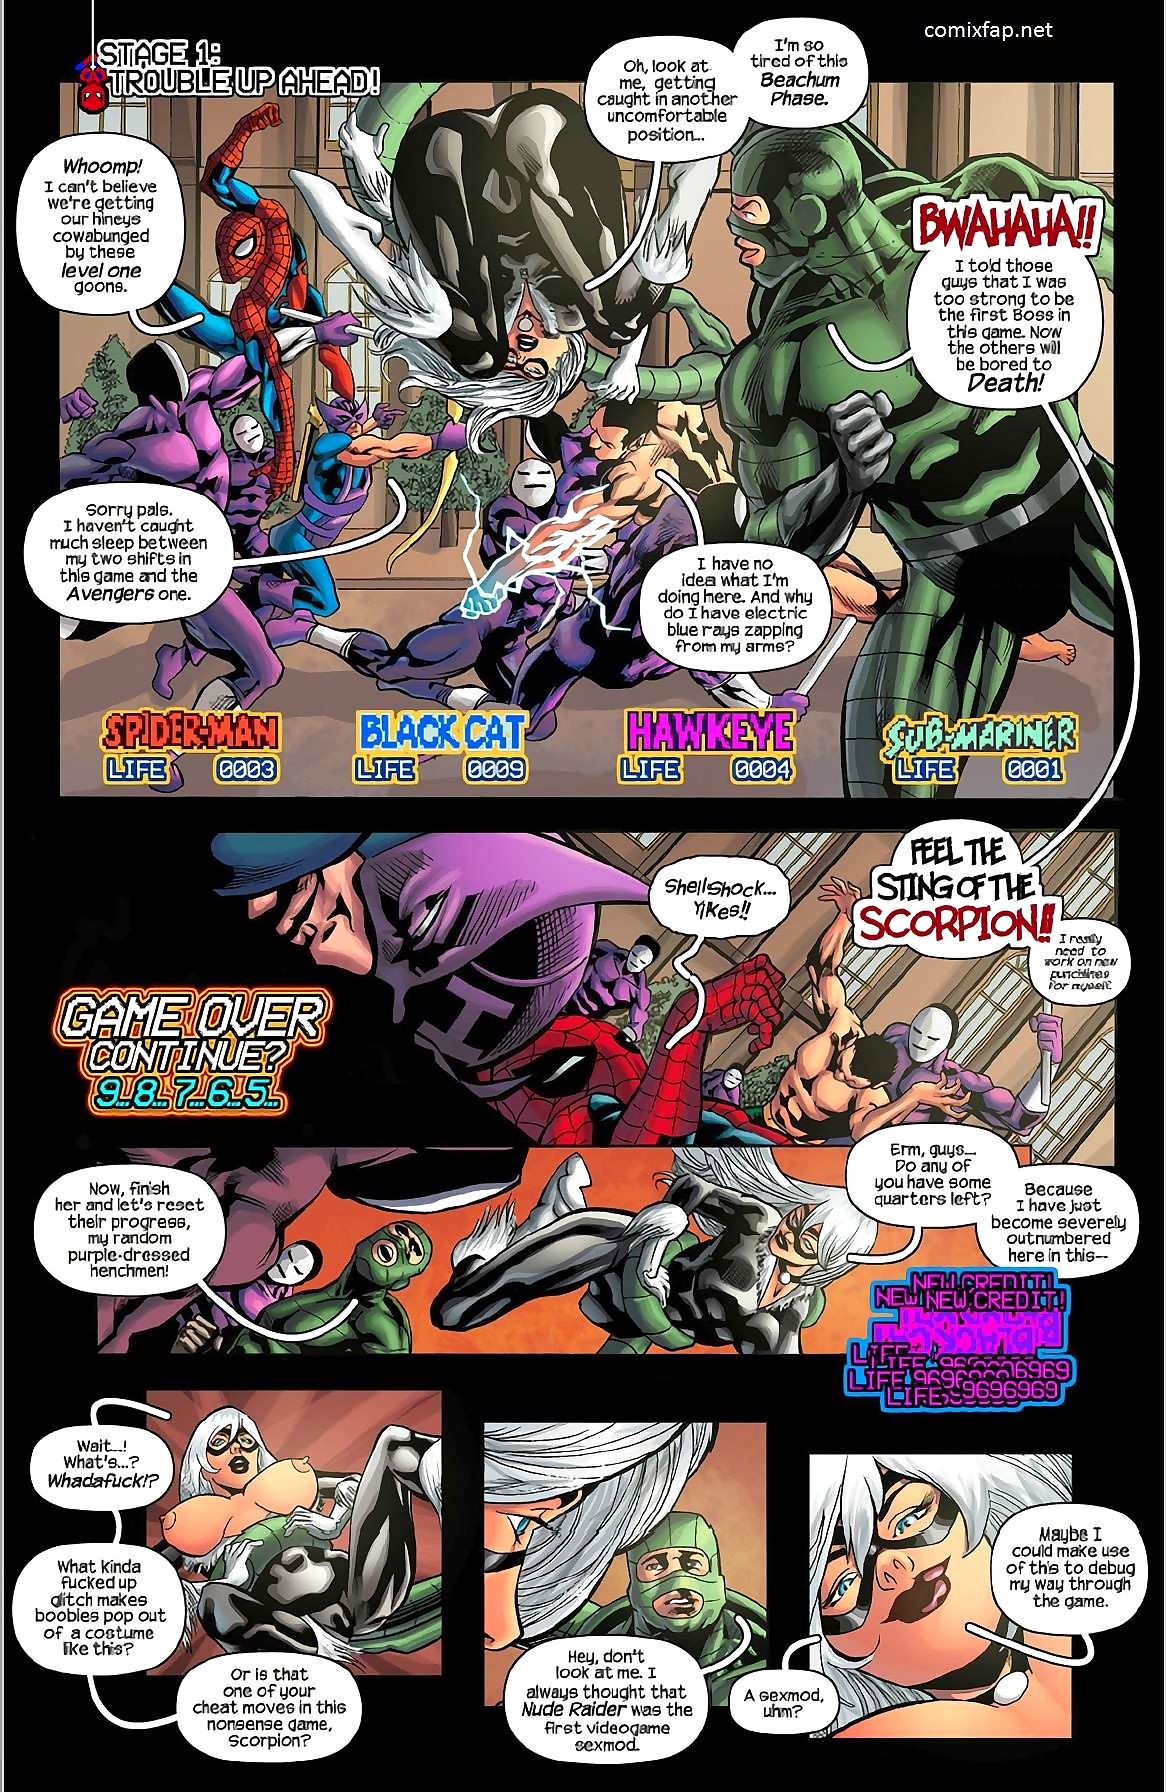 เทรซี่ scops spiderman, คน ’91 เกมอาเขต name เกมส์ page 1